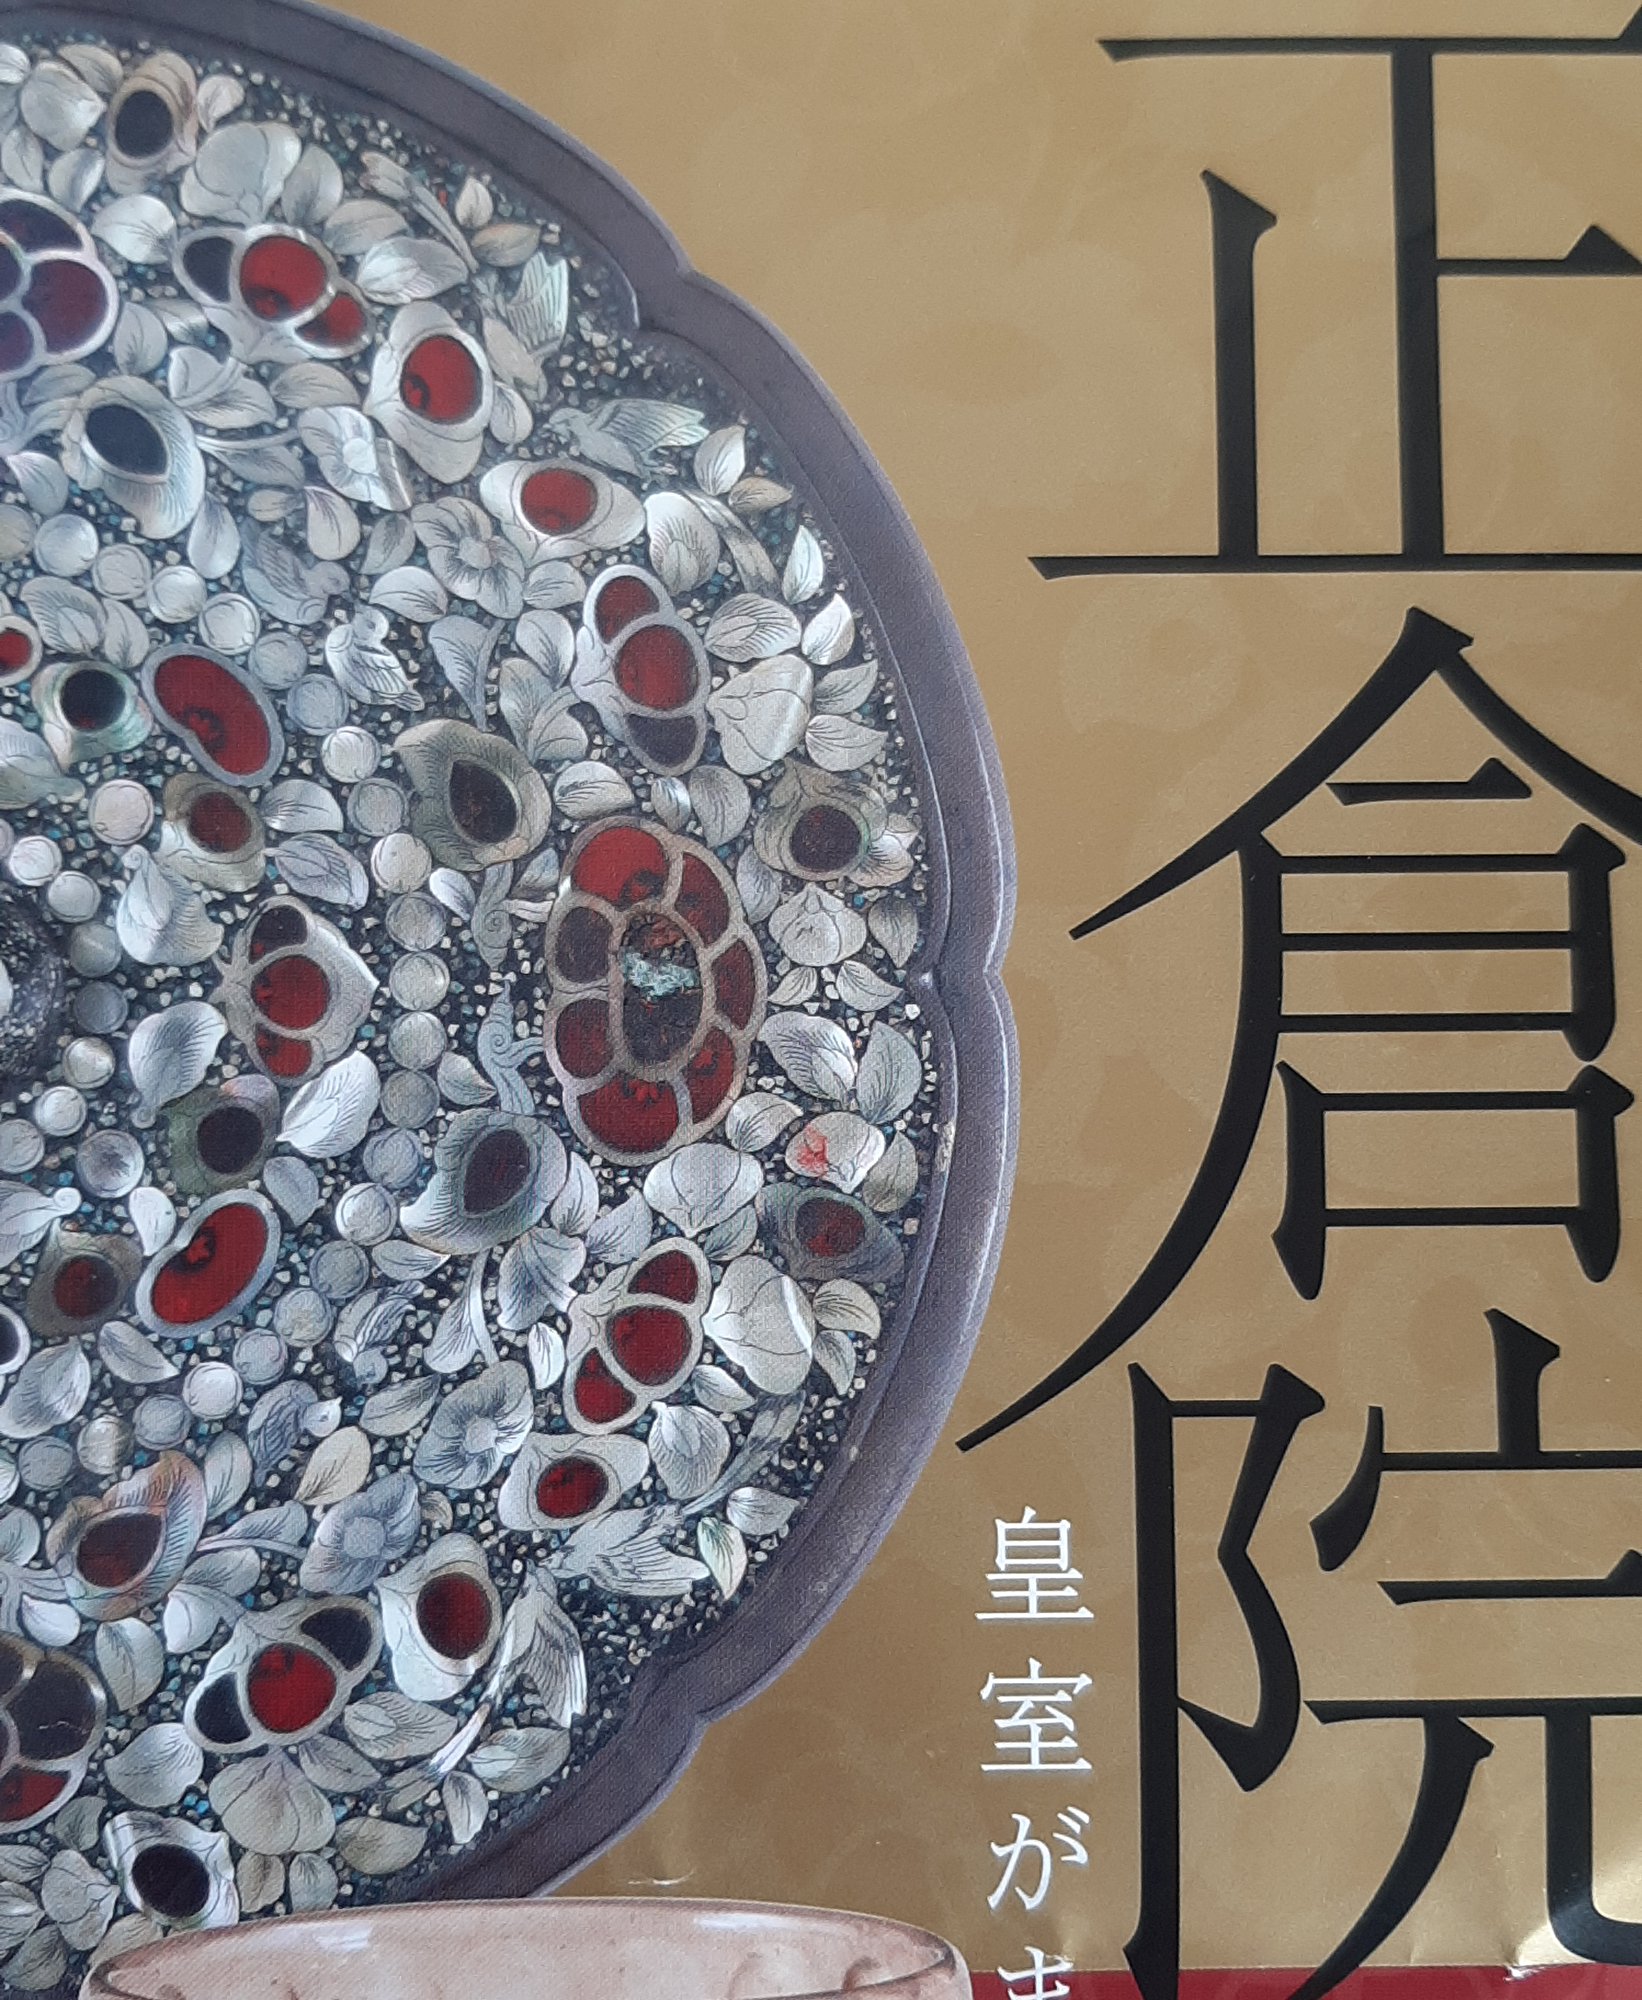 古中国最美宝镜在日本展放大唐光彩| 大唐文化| 正仓院| 璀璨中华文化 